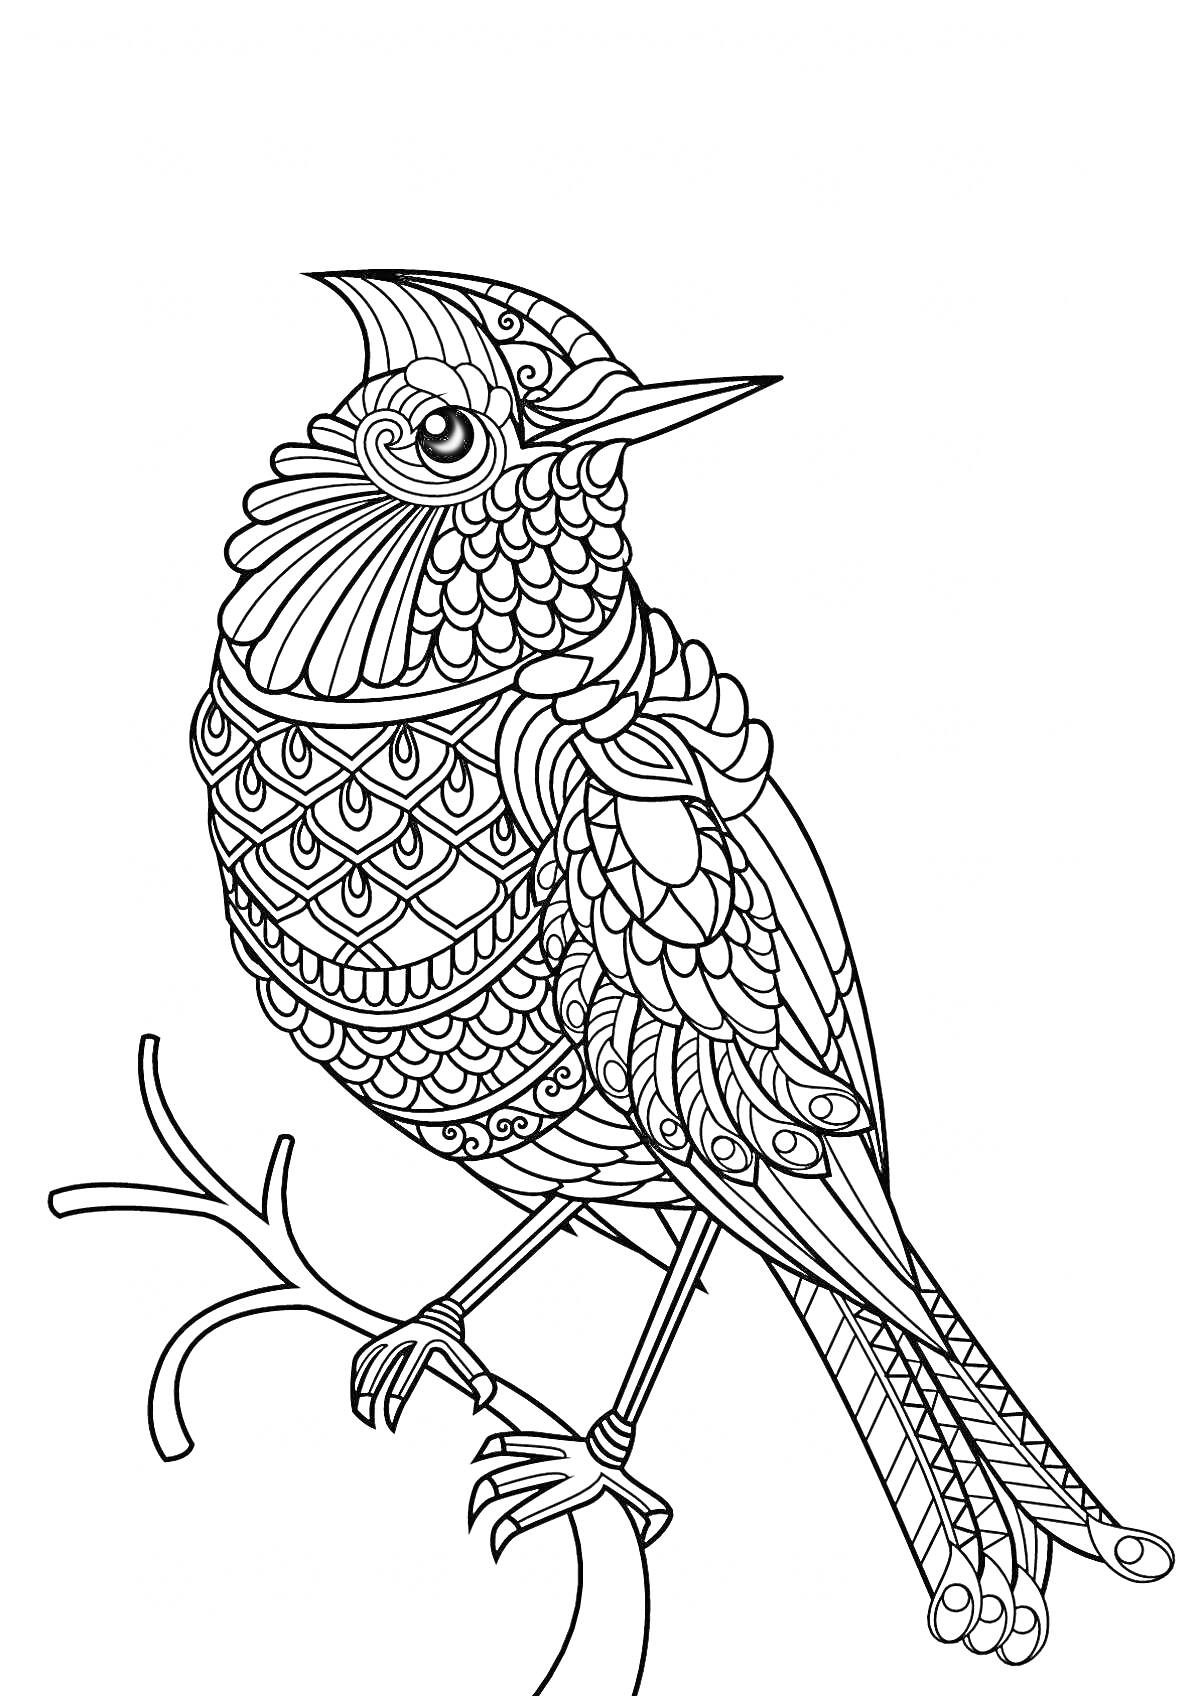 Раскраска Птица на ветке с узорчатыми перьями